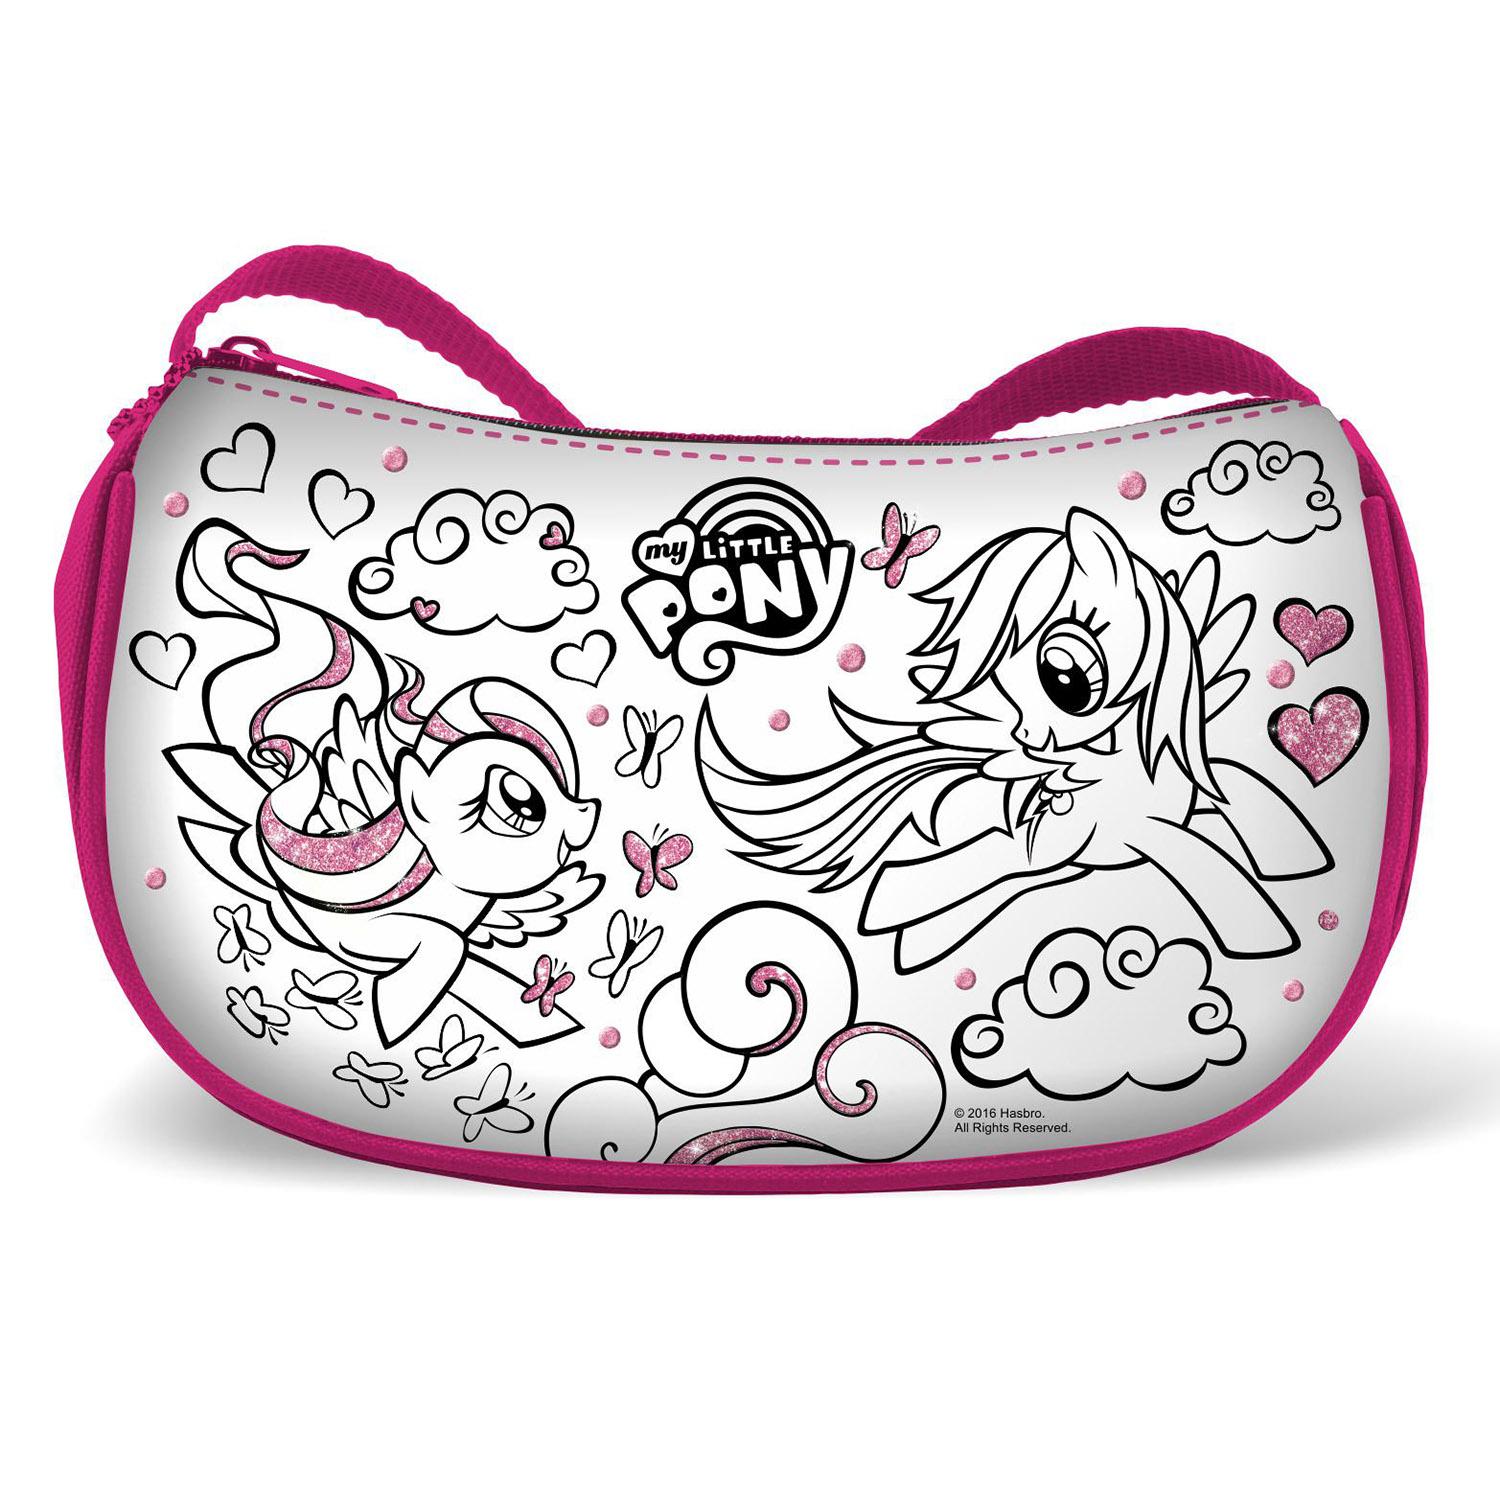 Мини-сумка для раскрашивания My little pony™ с маркерами  